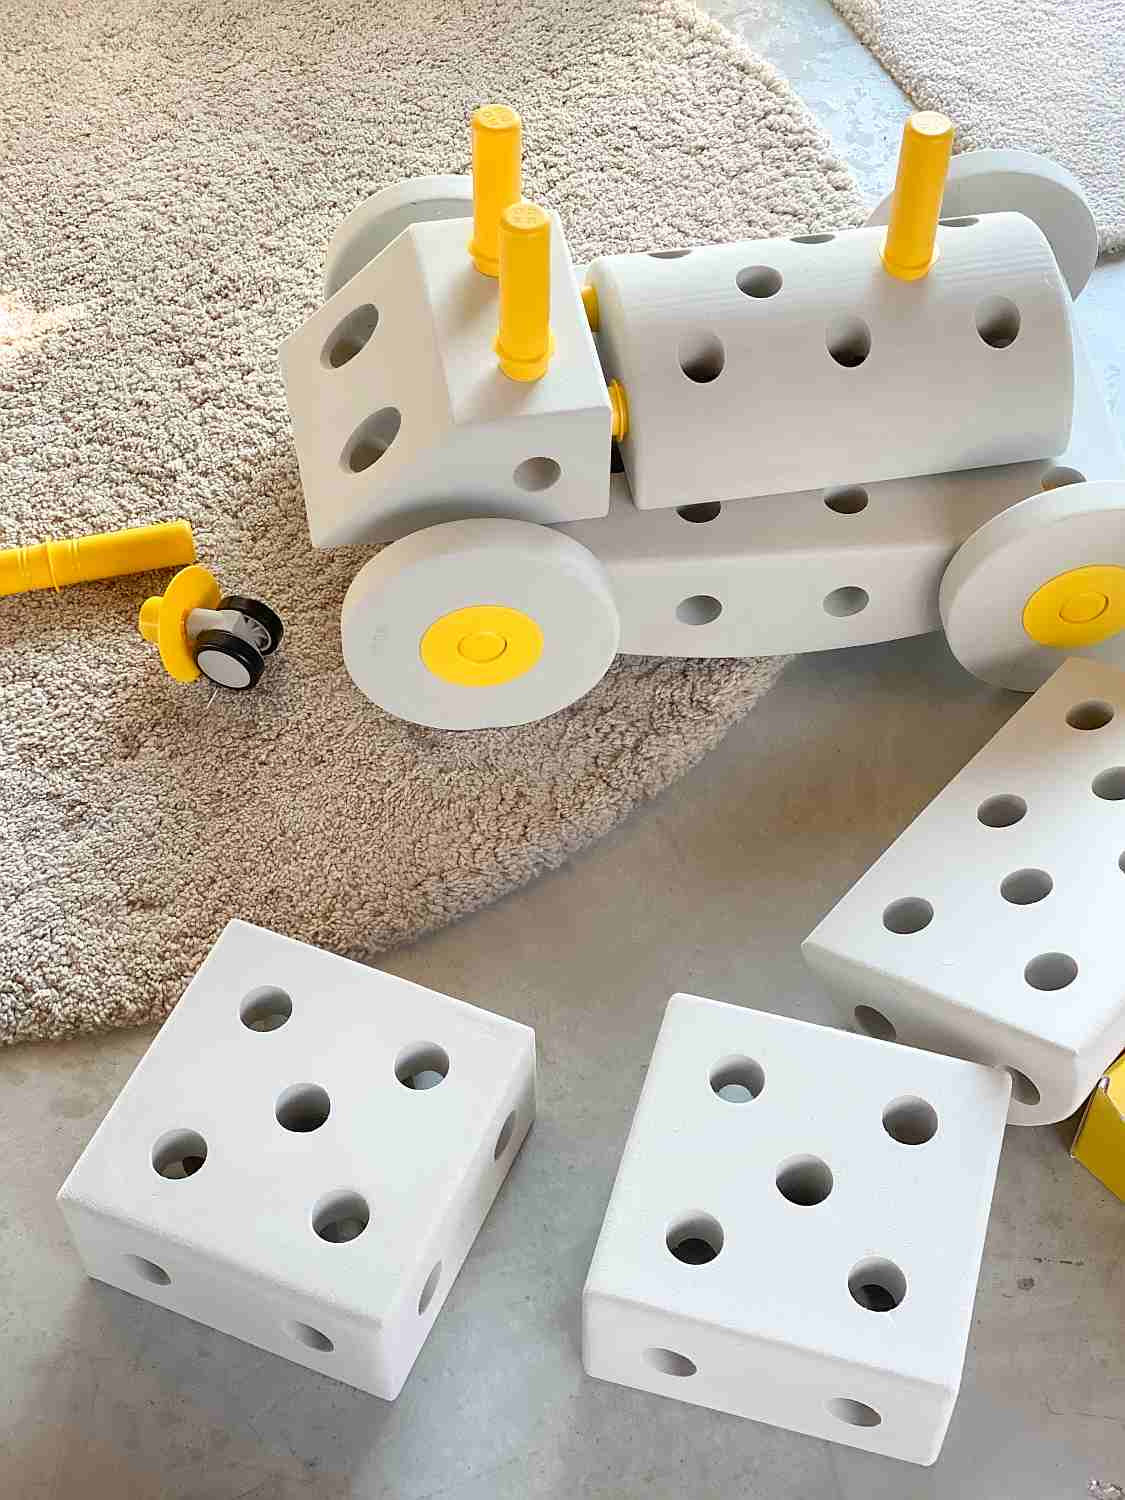 Module - a set of 4 foam wheels, yellow